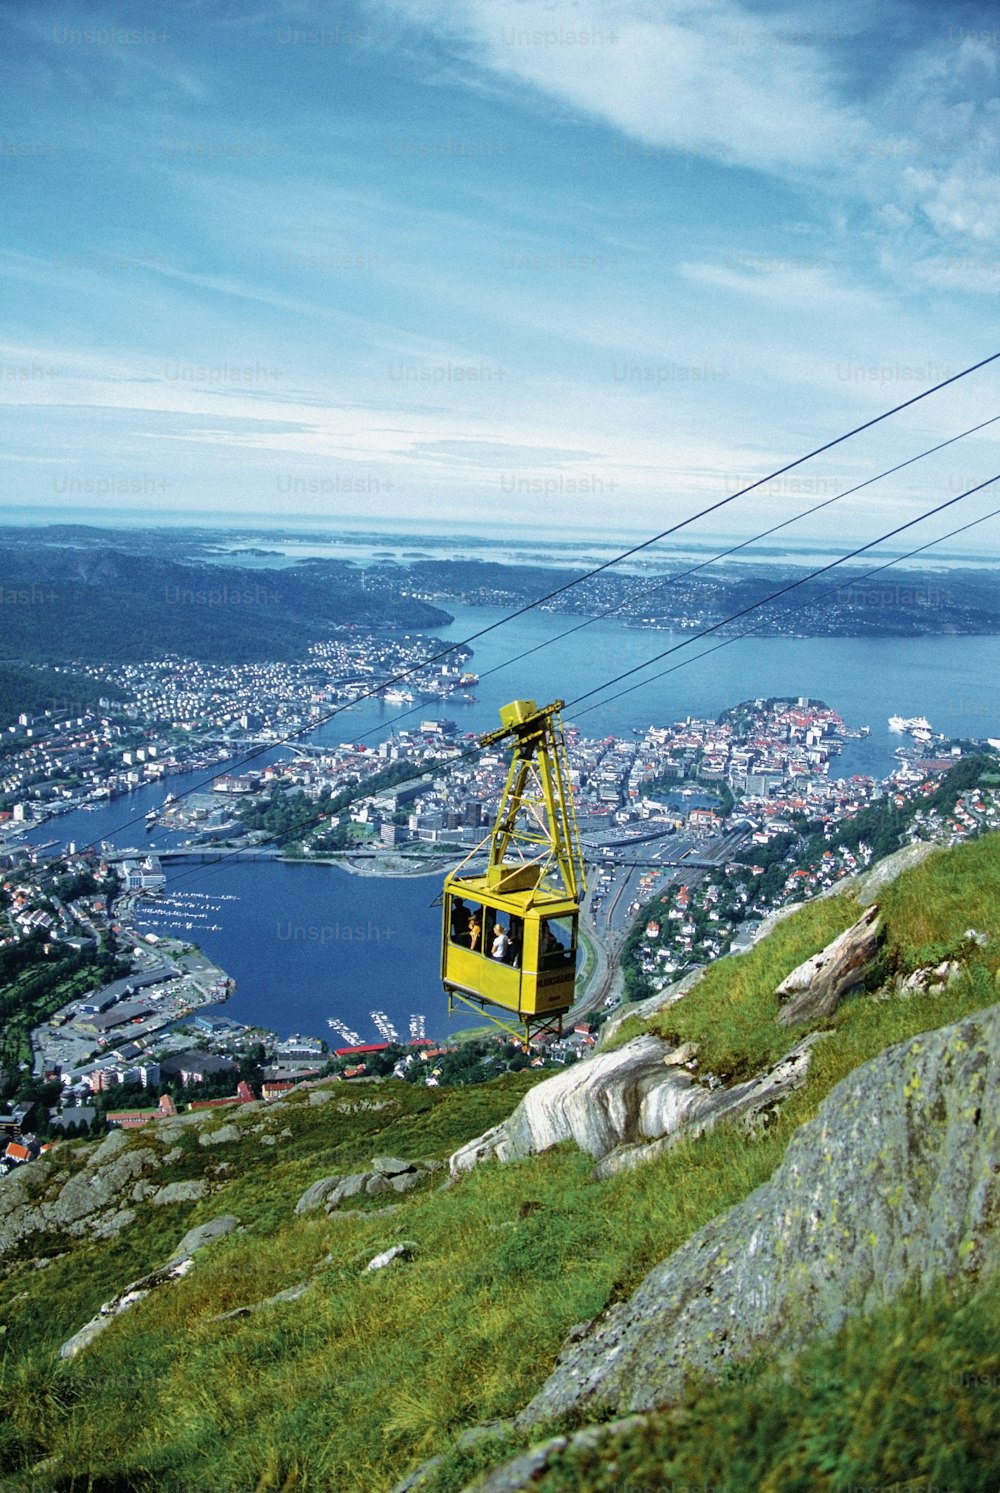 Un teleférico amarillo subiendo una colina con una ciudad al fondo